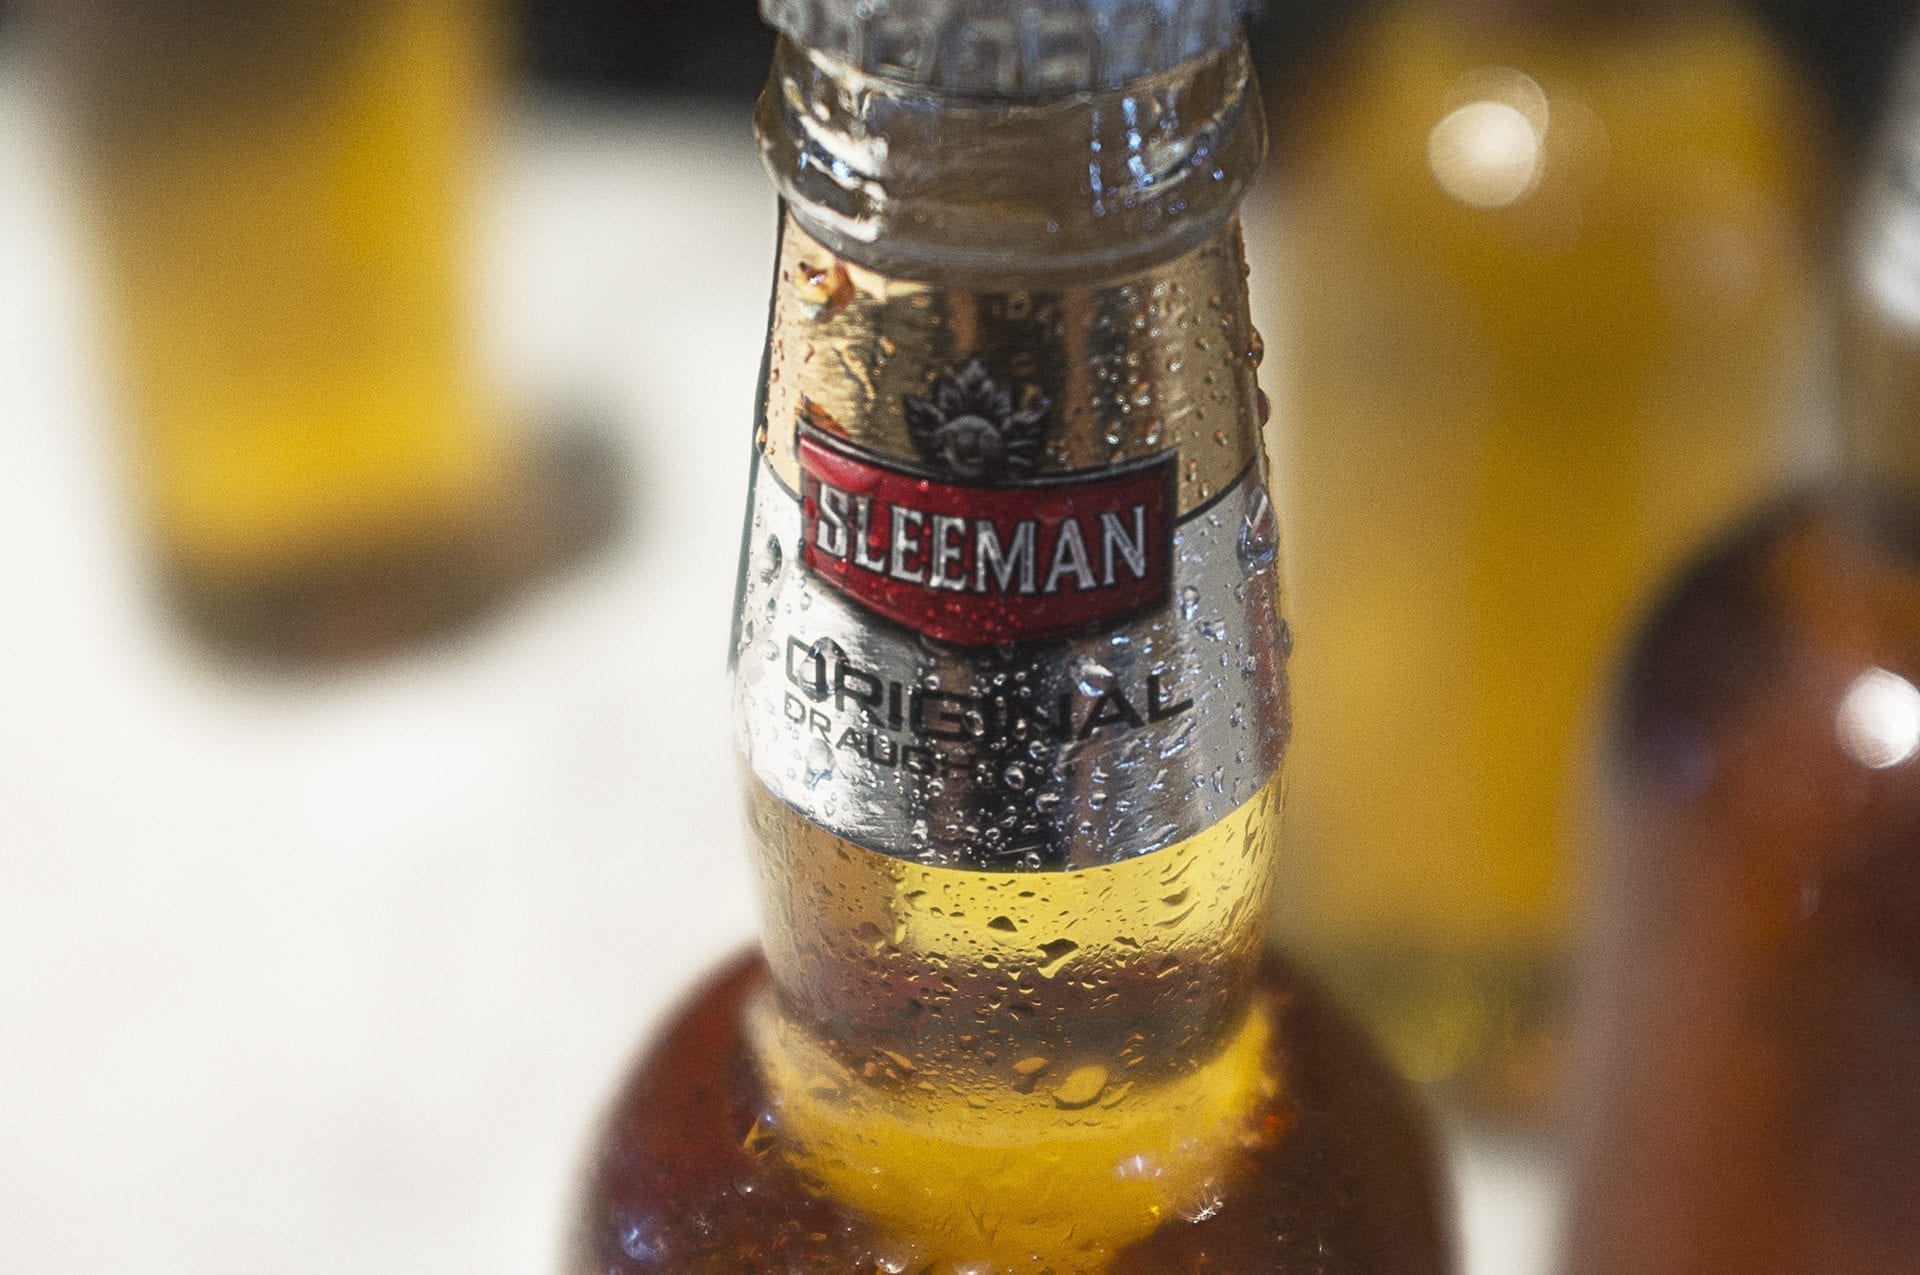 Sleeman beer bottle design concept